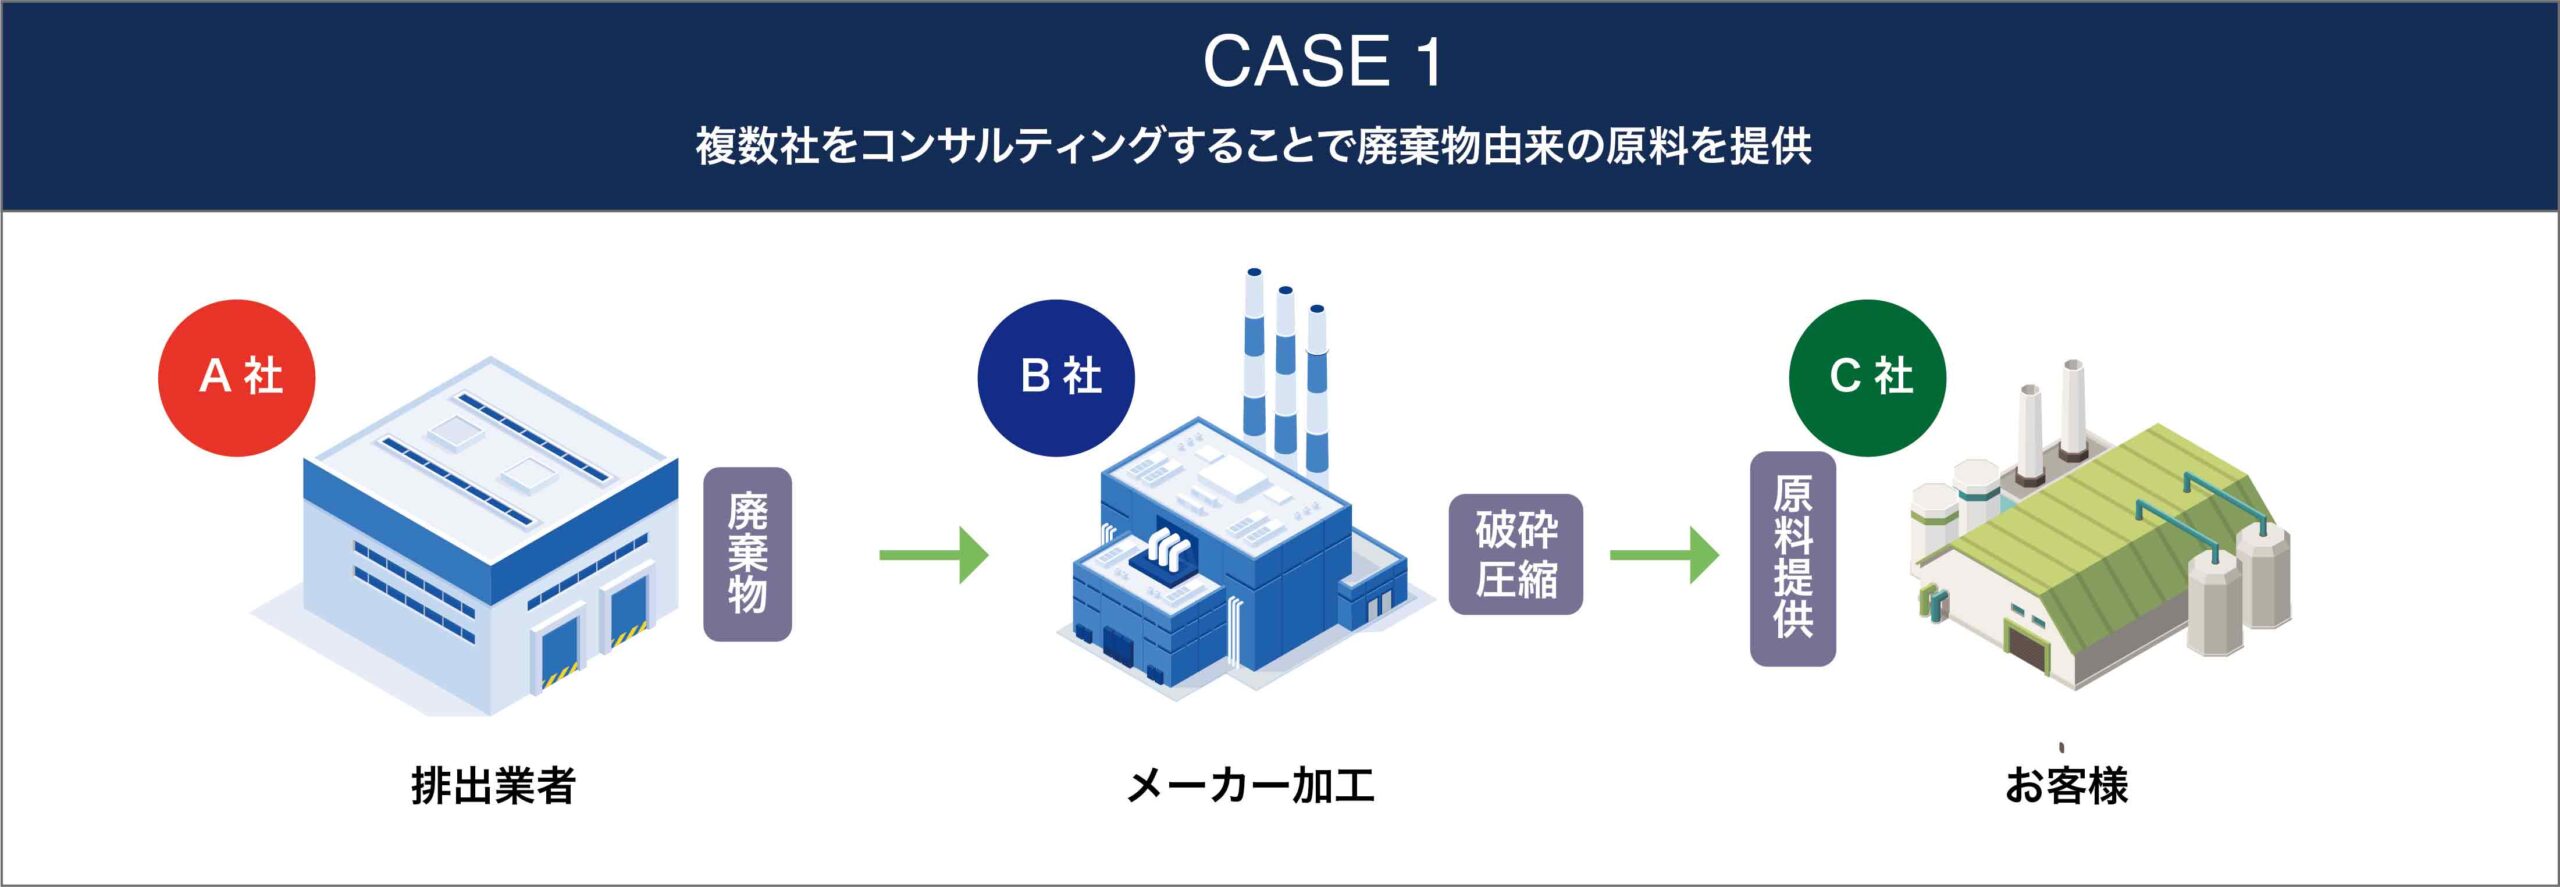 CASE1 複数社をコンサルティングすることで廃棄物由来の原料を提供